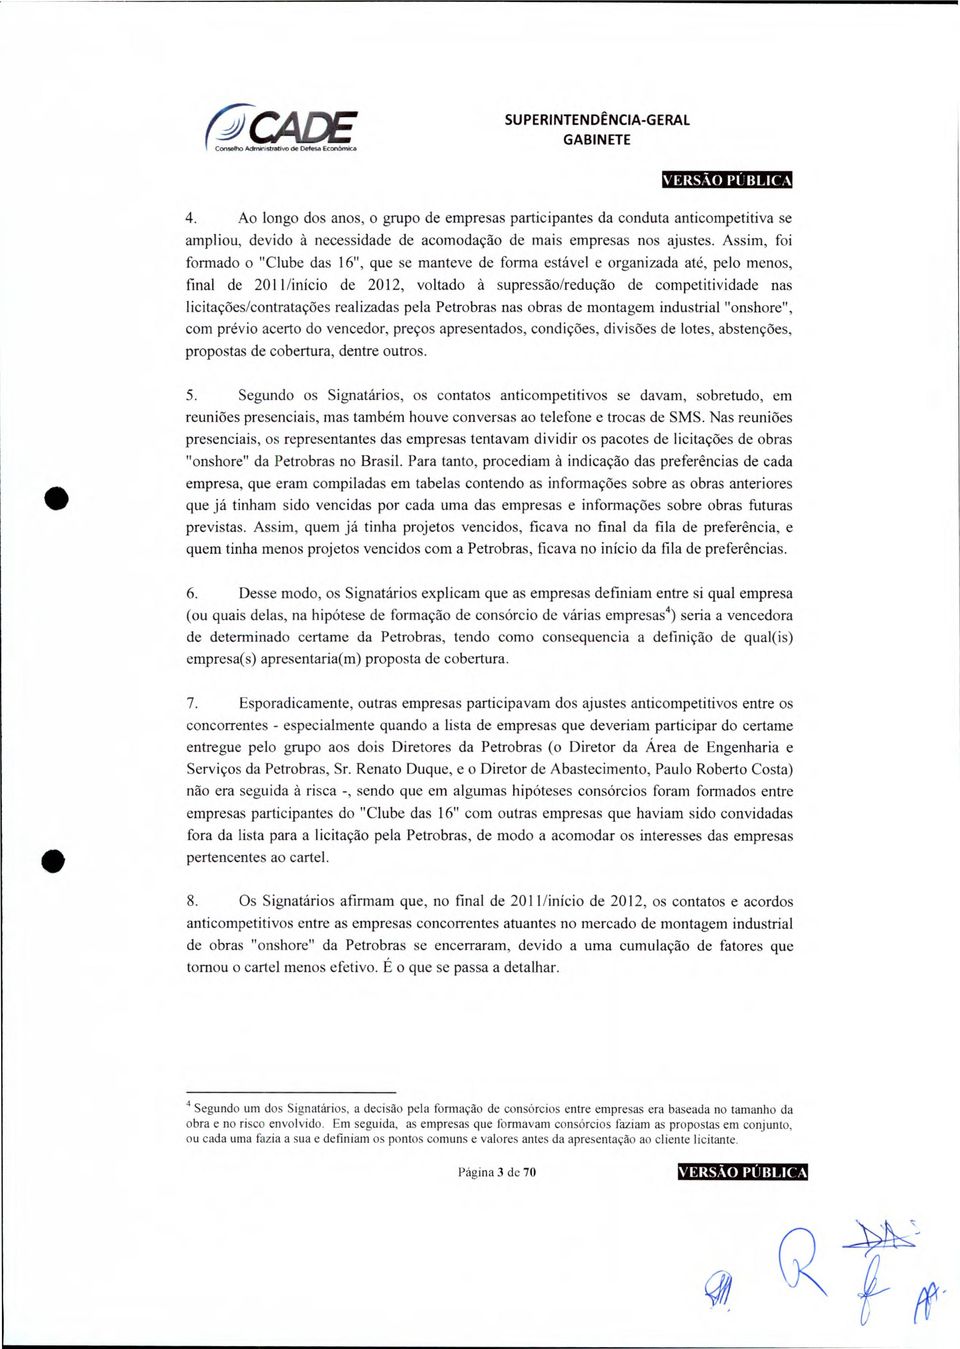 licitações/contratações realizadas pela Petrobras nas obras de montagem industrial "onshore", com prévio acerto do vencedor, preços apresentados, condições, divisões de lotes, abstenções, propostas